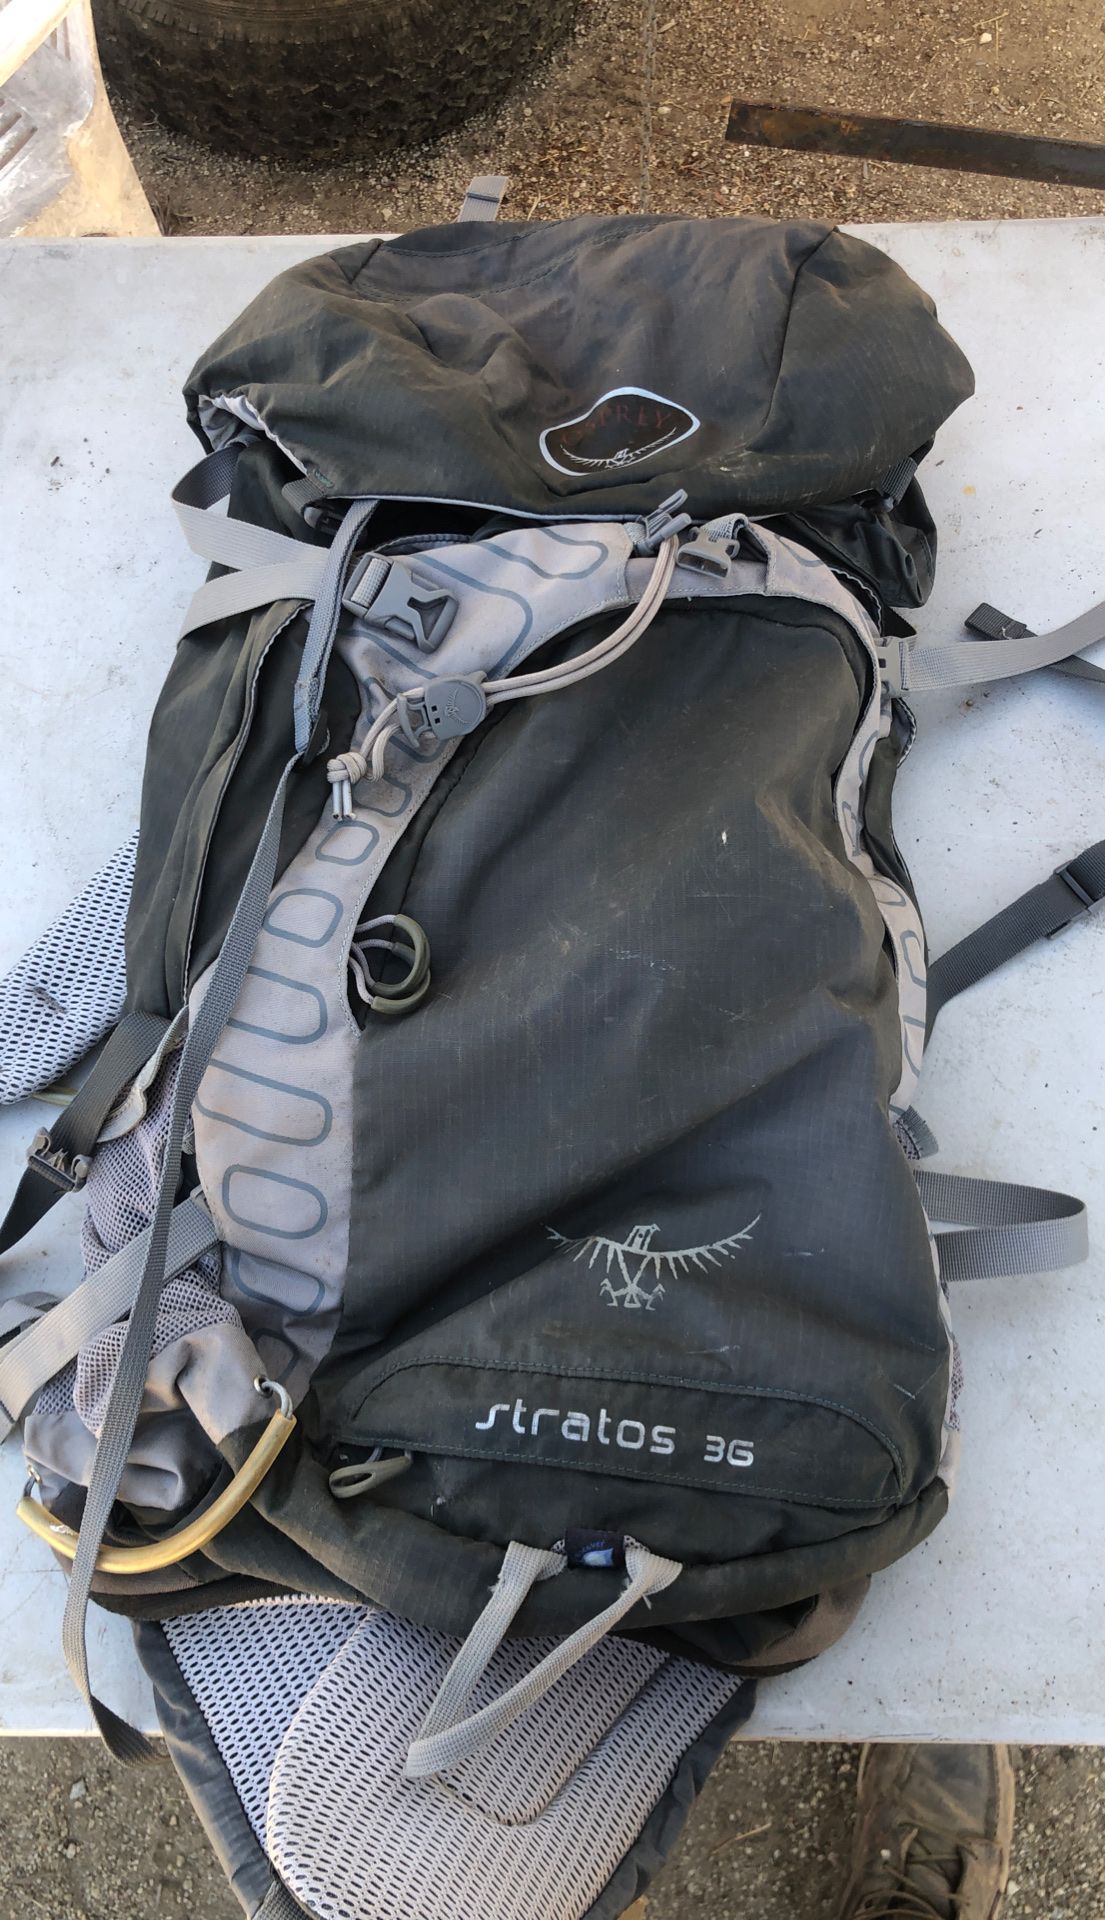 Osprey stratos 3g hiking backpack